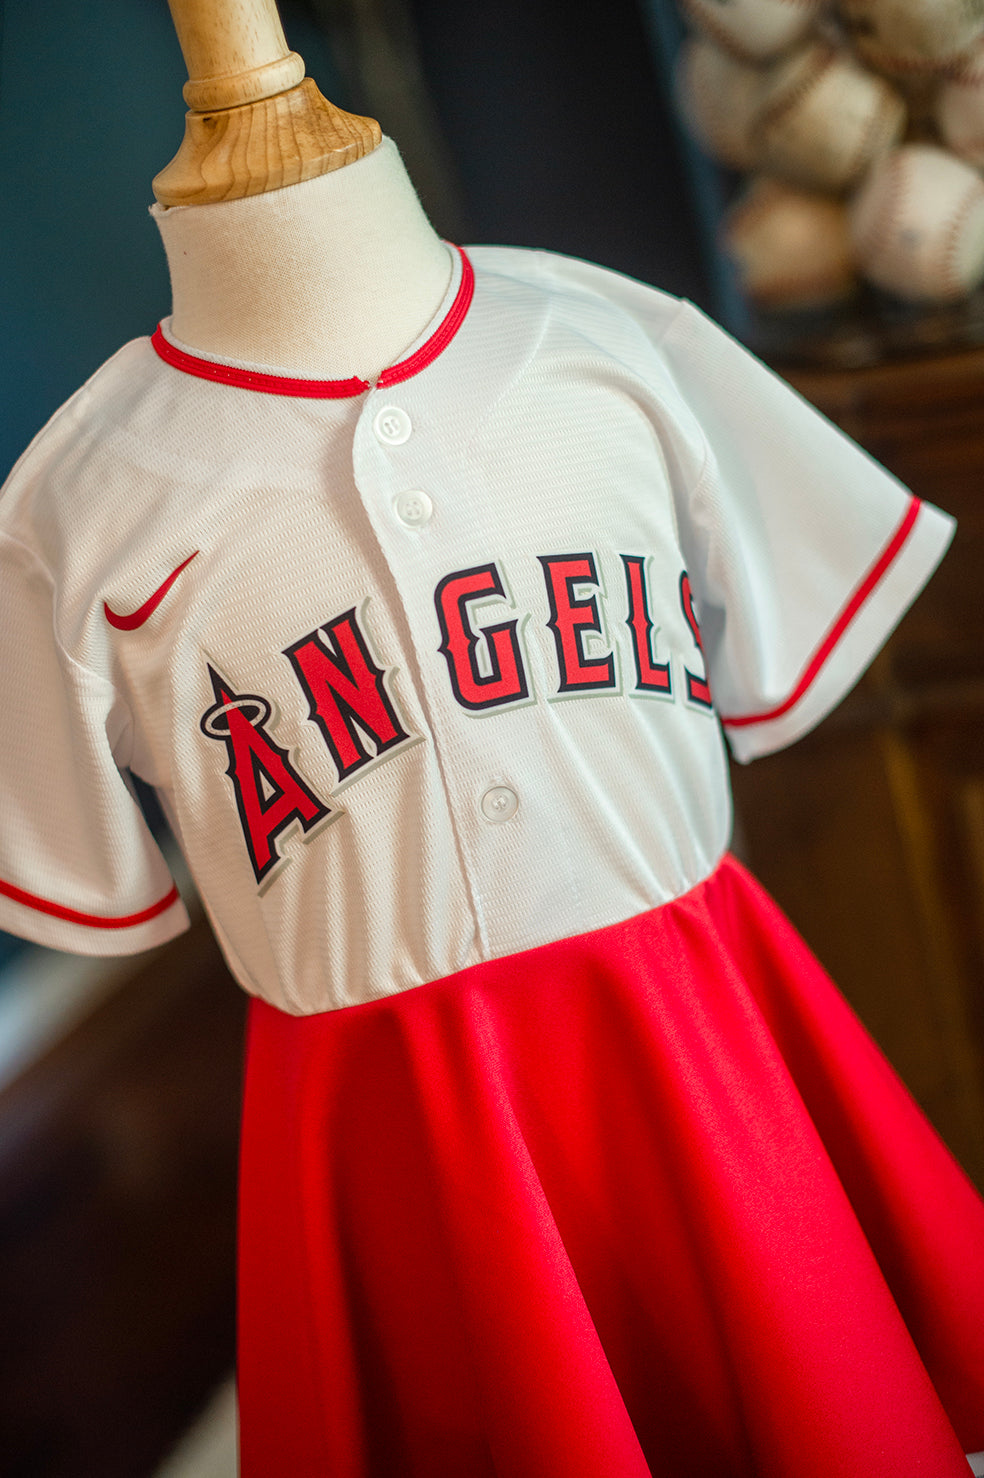 Anaheim Angels Dress - Girls